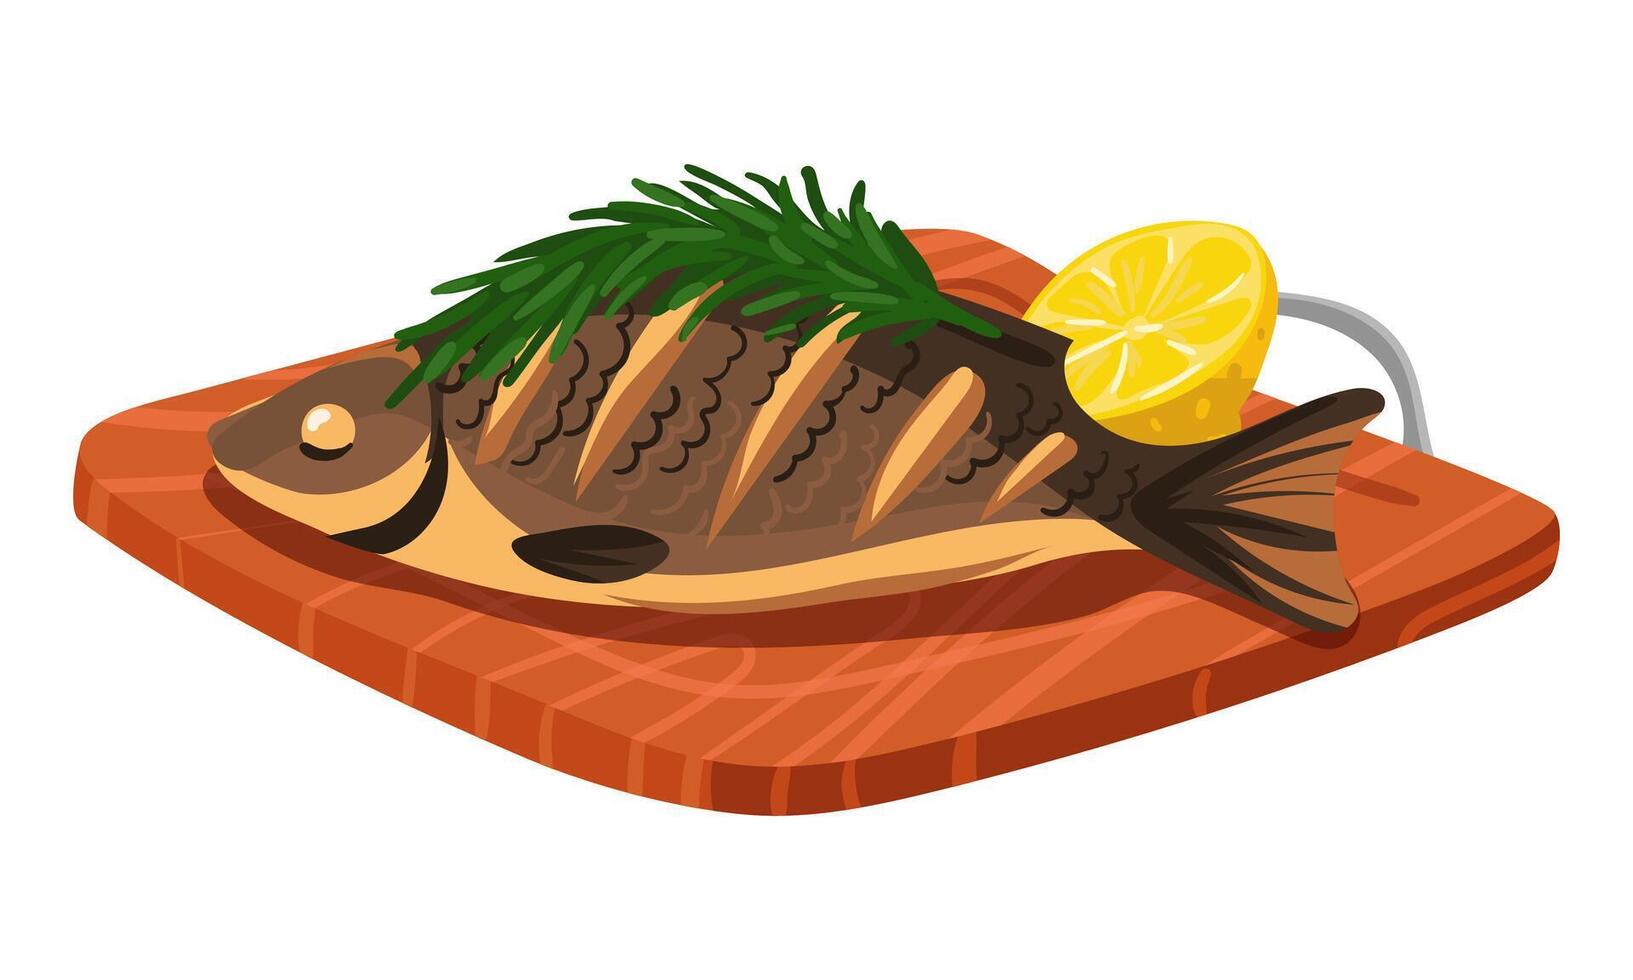 trä- hackning styrelse med hela friterad fisk och krydda med rosmarin, citron. illustration av utegrill fisk. färdiggjorda maträtt till tjäna. den är lämplig för demonstrera recept, matlagning vektor